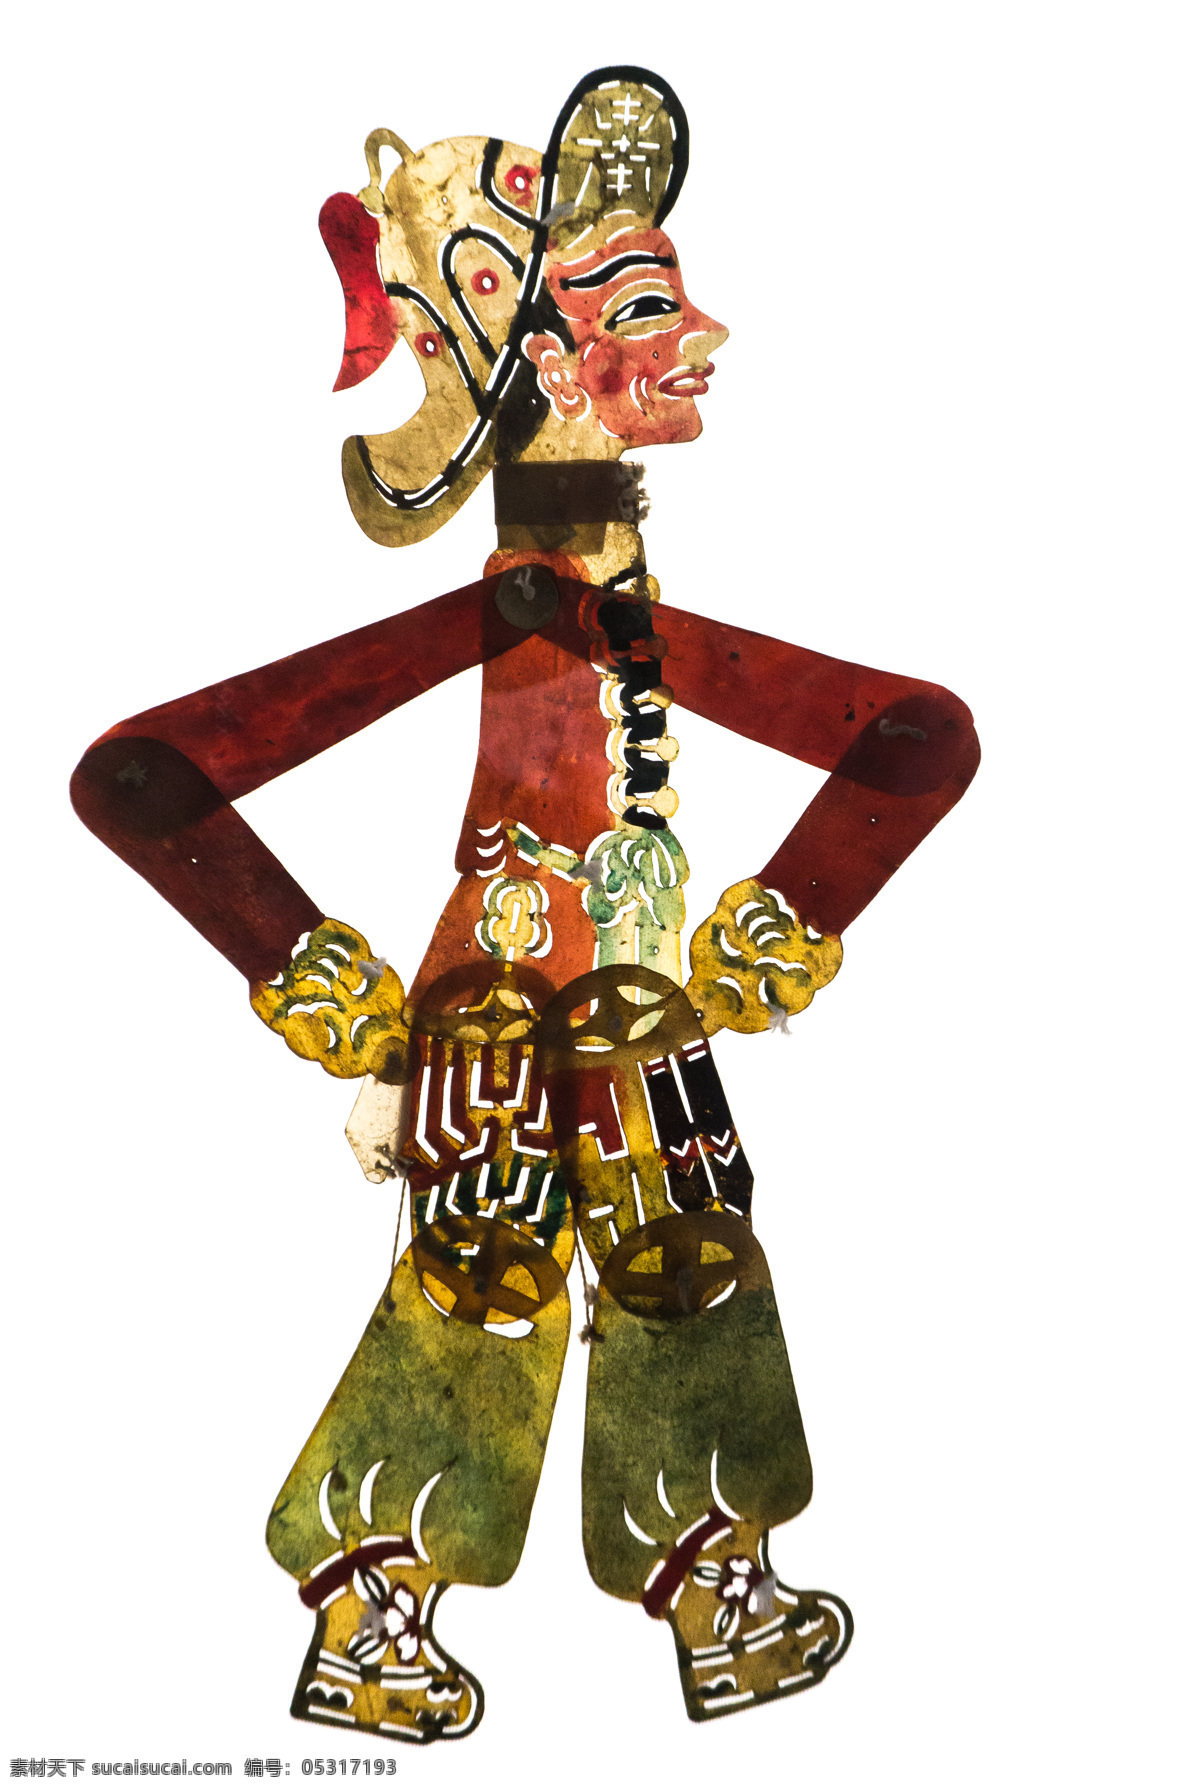 皮影戏 人物 皮影 传统 文化 文化遗产 民族 戏曲 古人 中国风 国粹 影子戏 驴皮影 戏剧艺术 文化艺术 传统文化